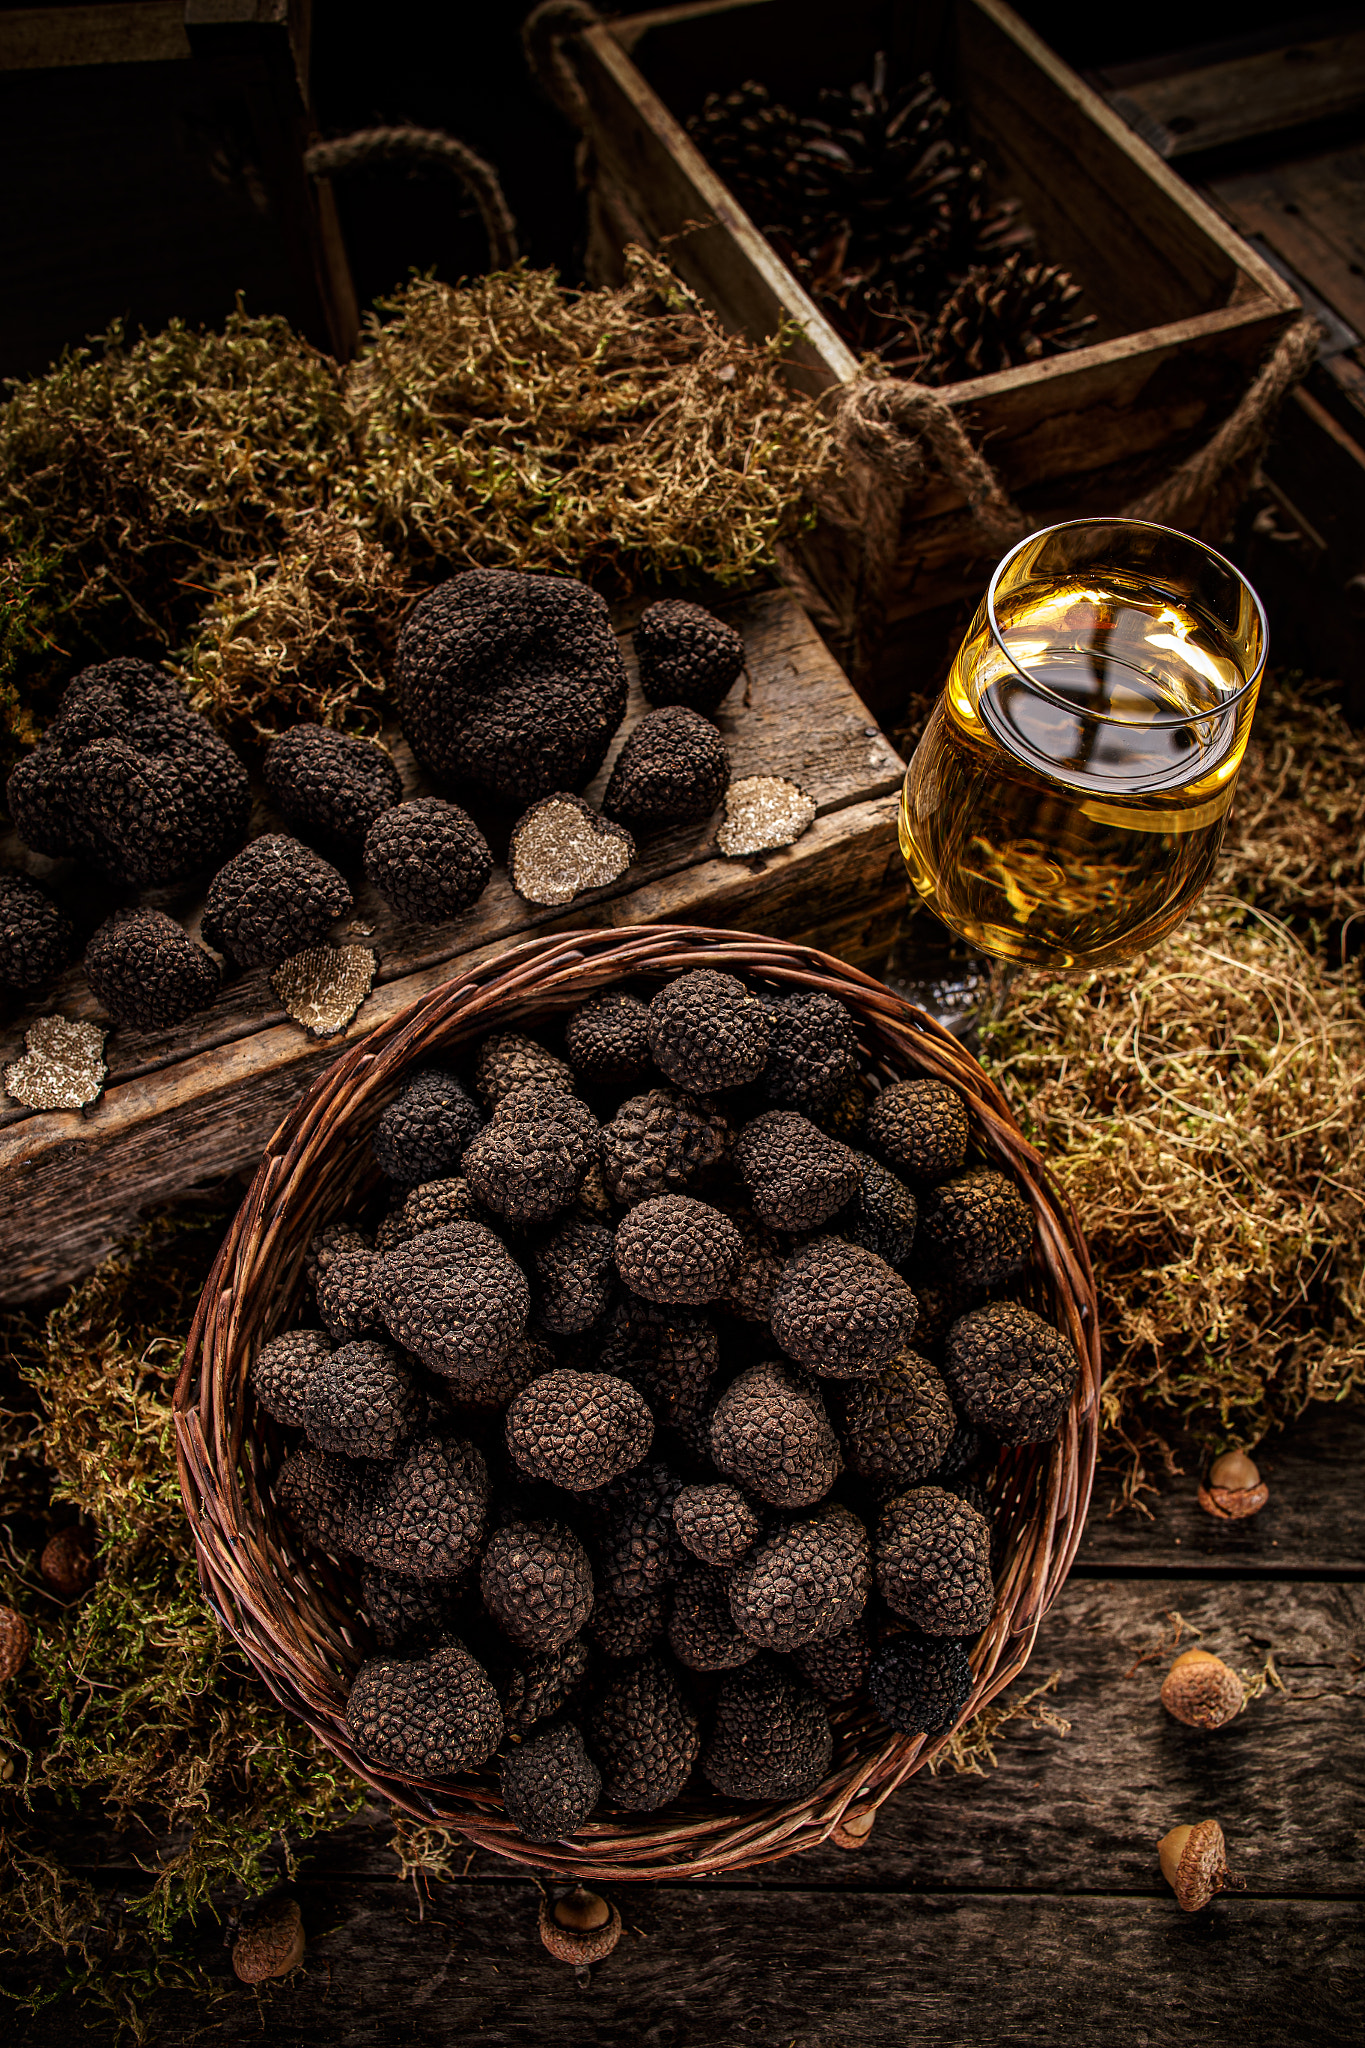 Black truffles, gourmet mushrooms